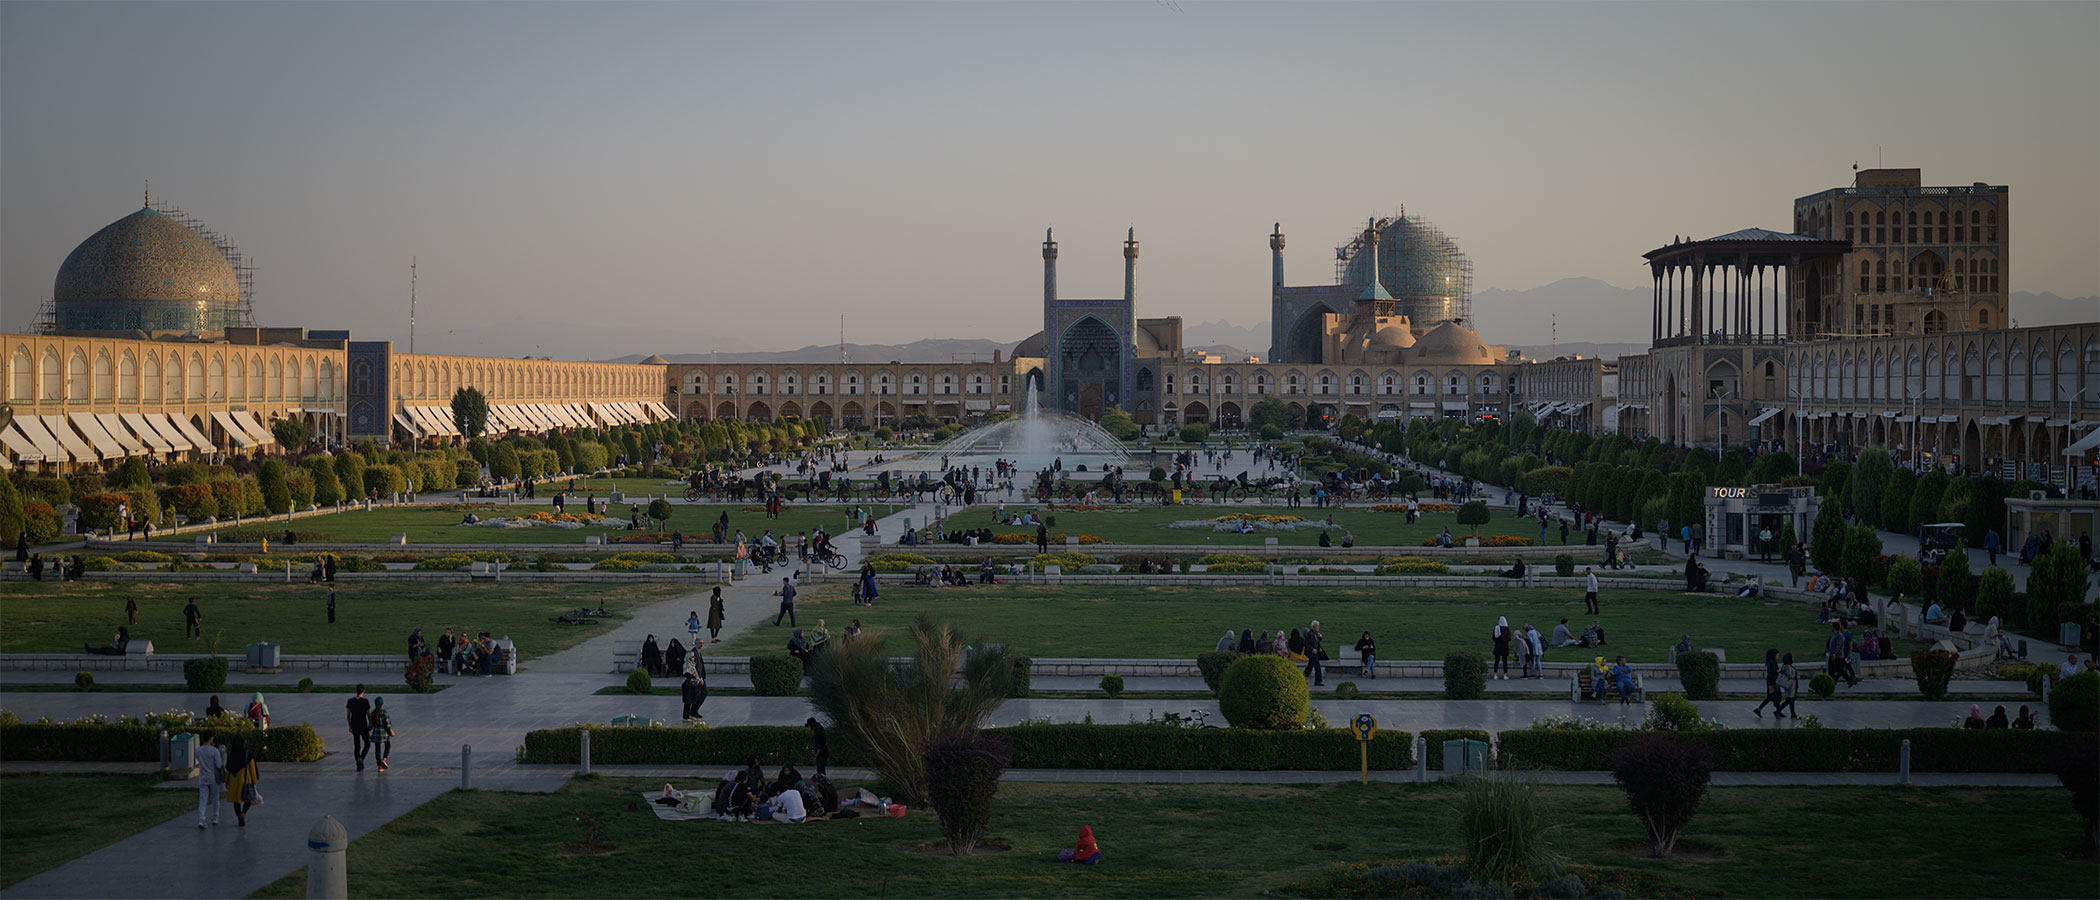 Meidan Naqshe Jahan Isfahan